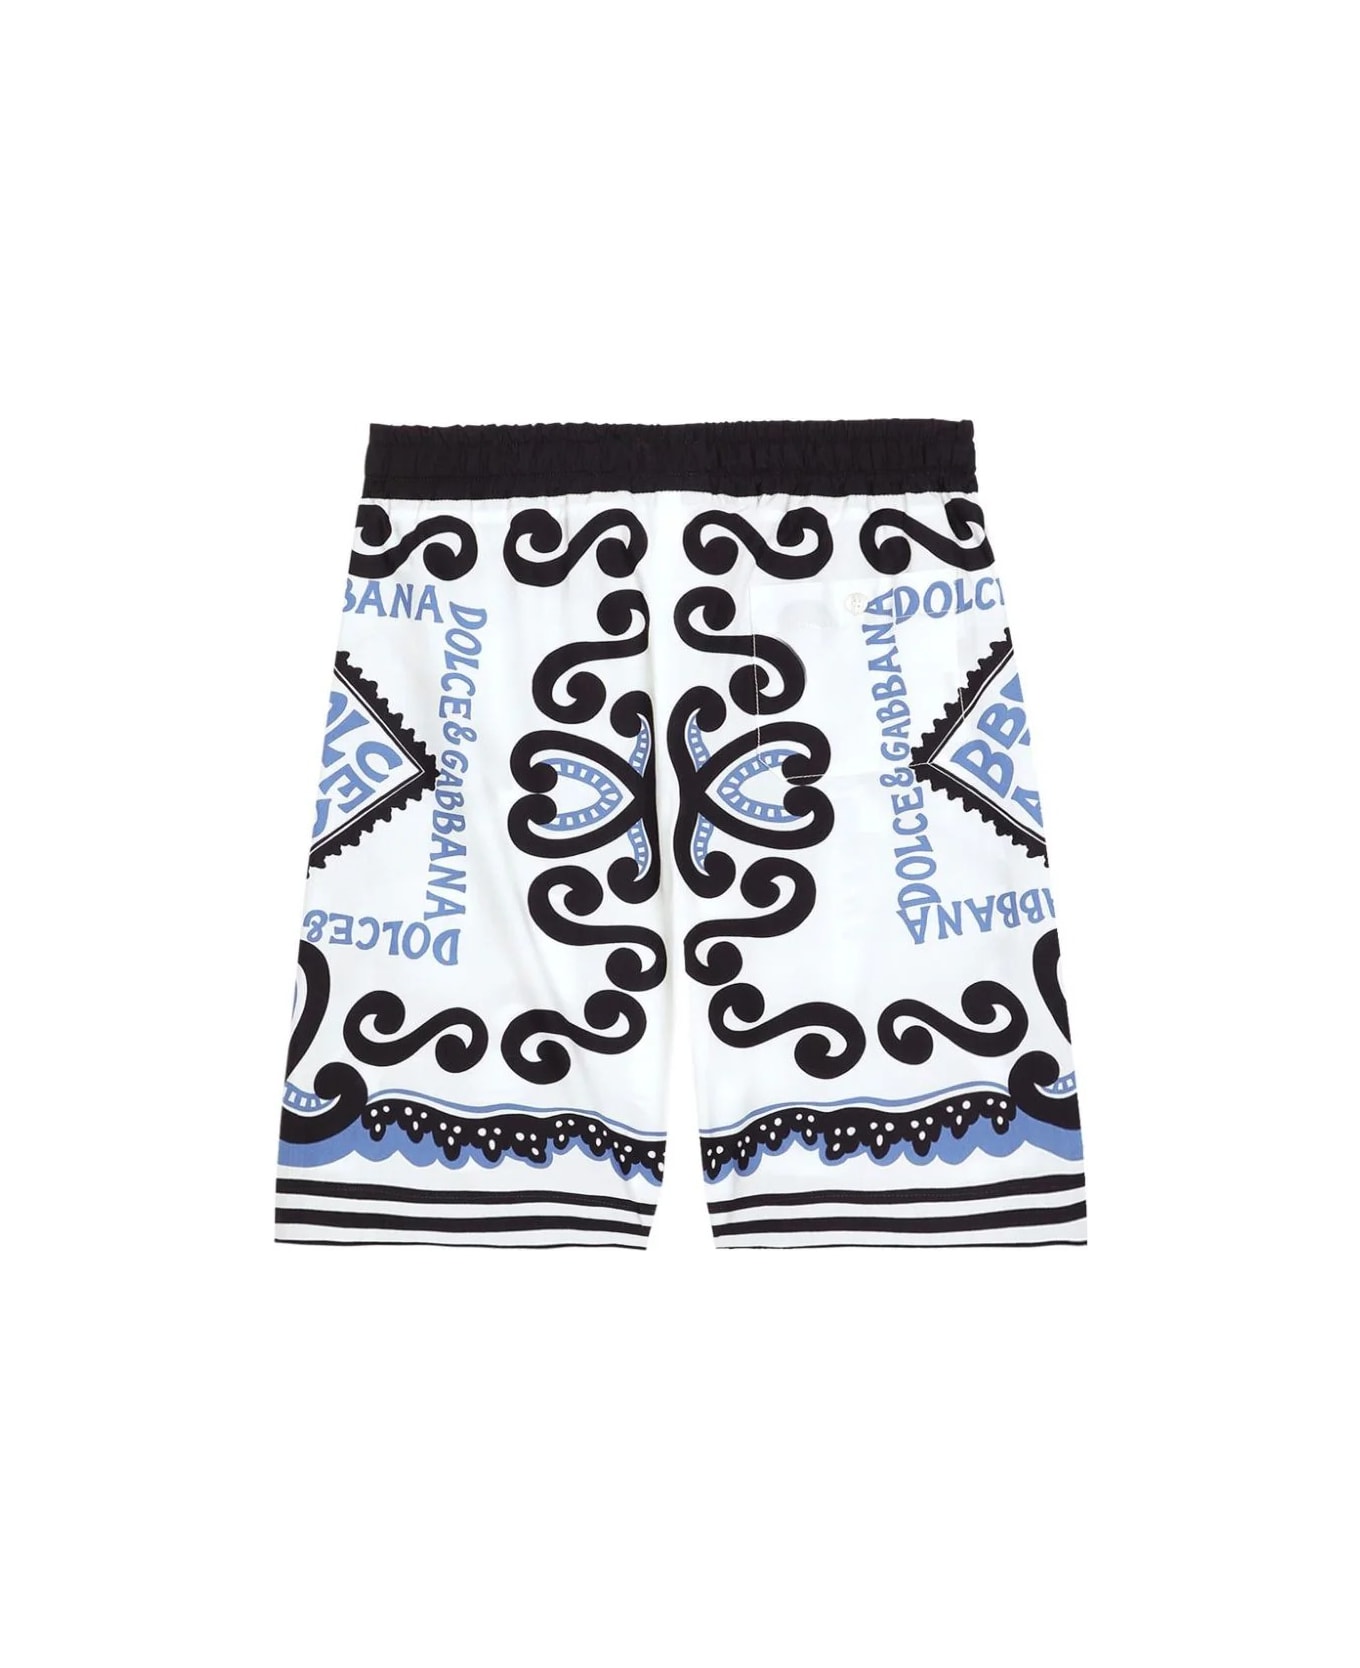 Dolce & Gabbana Bermuda Shorts With Marina Print - Blue